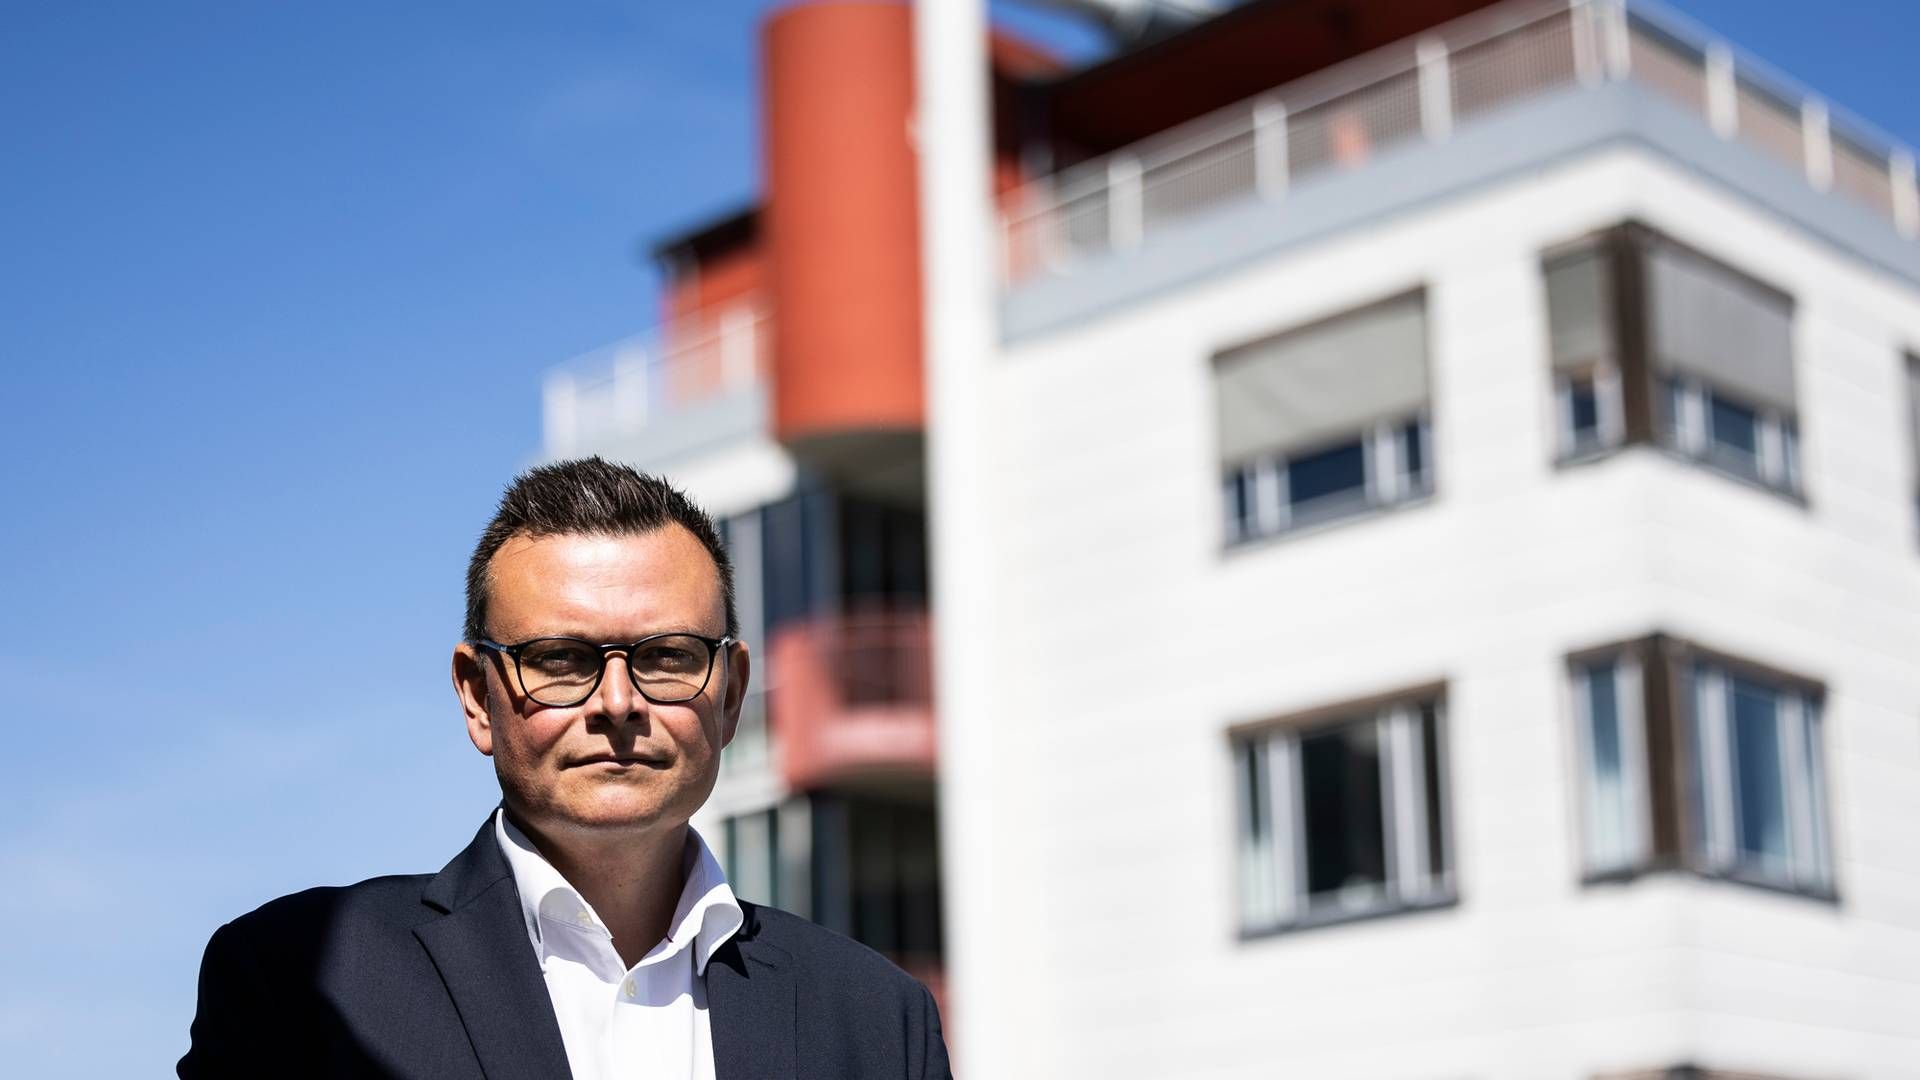 Fremadrettet vil Nordea være opsøgende i jagten på nye kunder til ejendomsfinansiering i flere afkroge af Danmark ifølge den nye head of real estate i erhvervsafdelingen, Morten Egon Jørgensen. | Foto: PR / Nordea